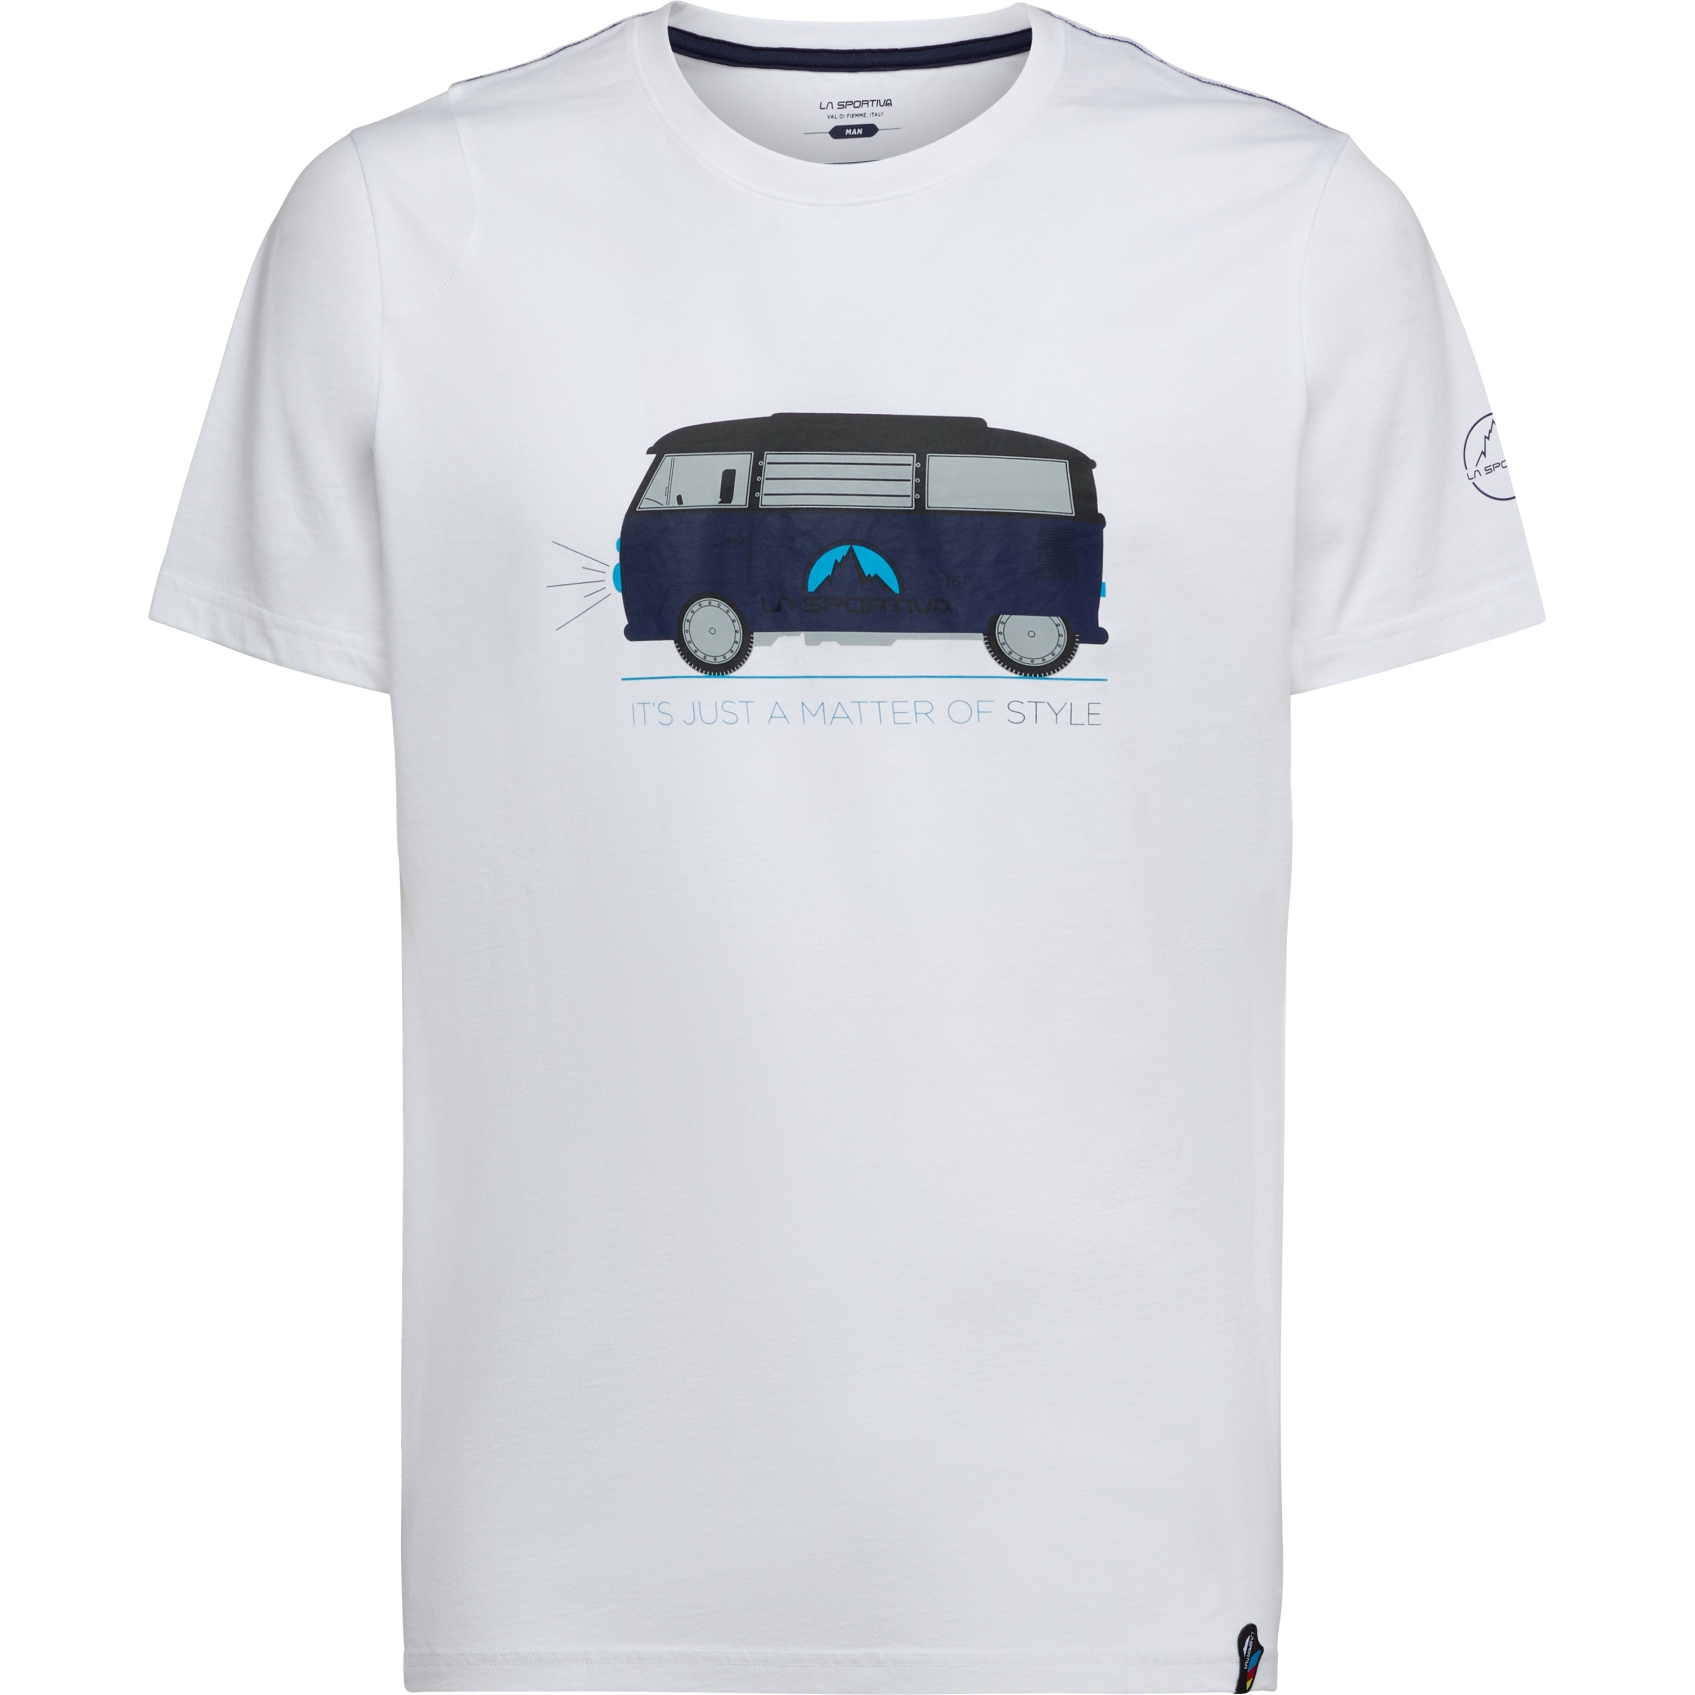 Productfoto van La Sportiva Van T-Shirt Heren - White/Deep Sea